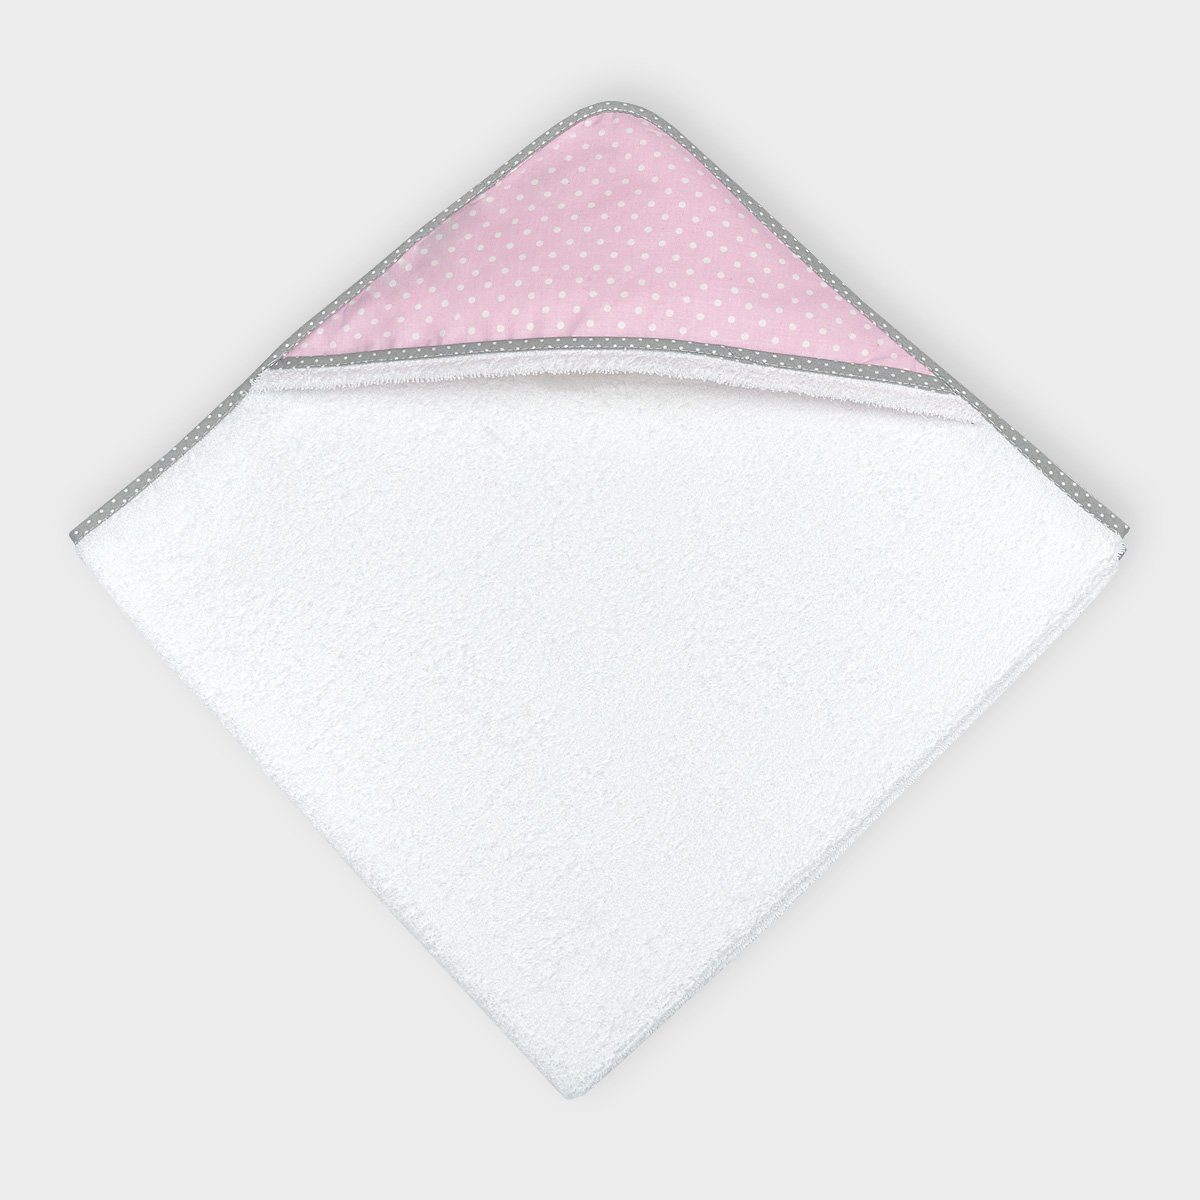 KraftKids Kapuzenhandtuch weiße Punkte auf Rosa, 100% Baumwolle, extra dickes und weiches Frottee, eingefasst mit Schrägband